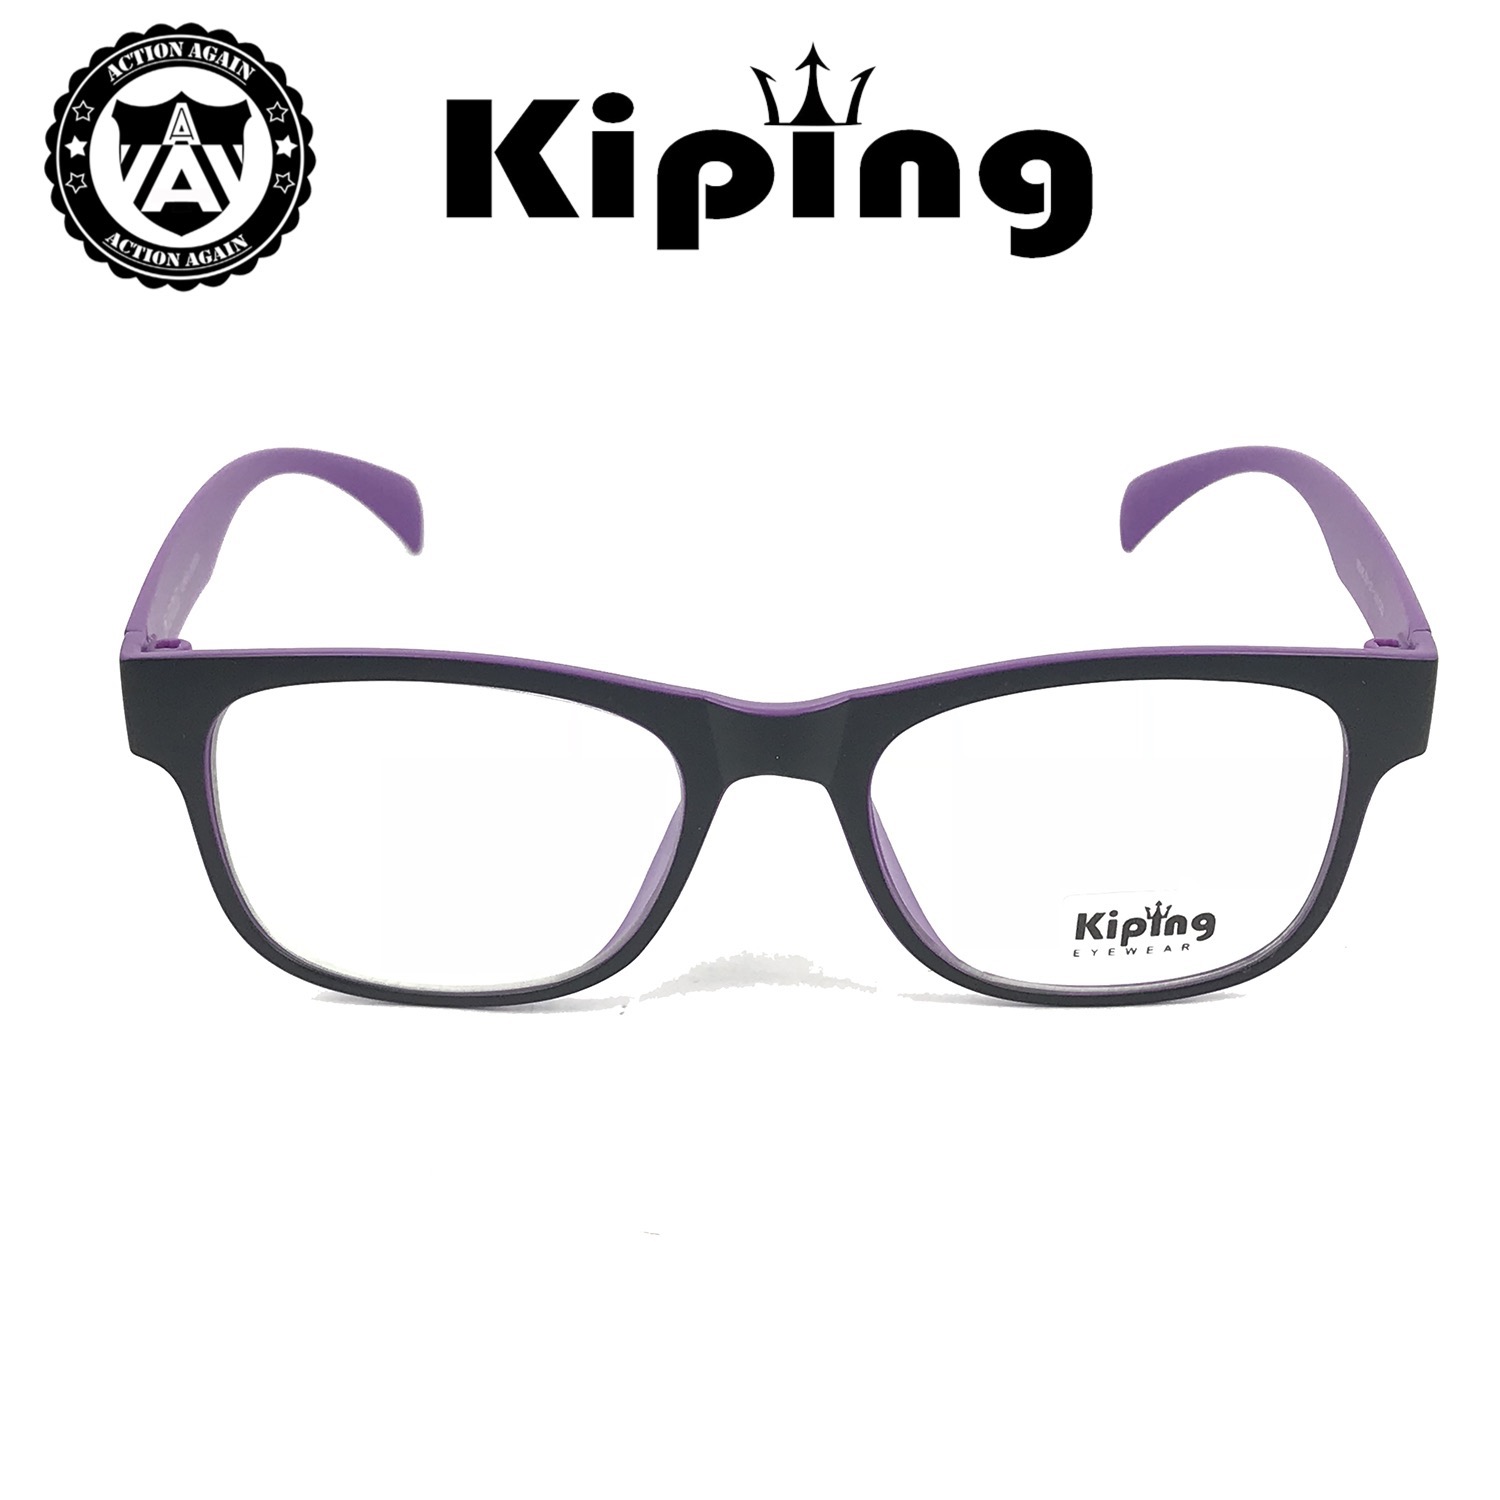 คำอธิบายเพิ่มเติมเกี่ยวกับ KIPING 99246 แว่นสายตา แว่นกรองแสงฟ้า แว่นตากรองแสง แฟชั่นล่าสุด แว่นตา แฟชั่น เต็มเฟรม แว่นตาราคาถูก